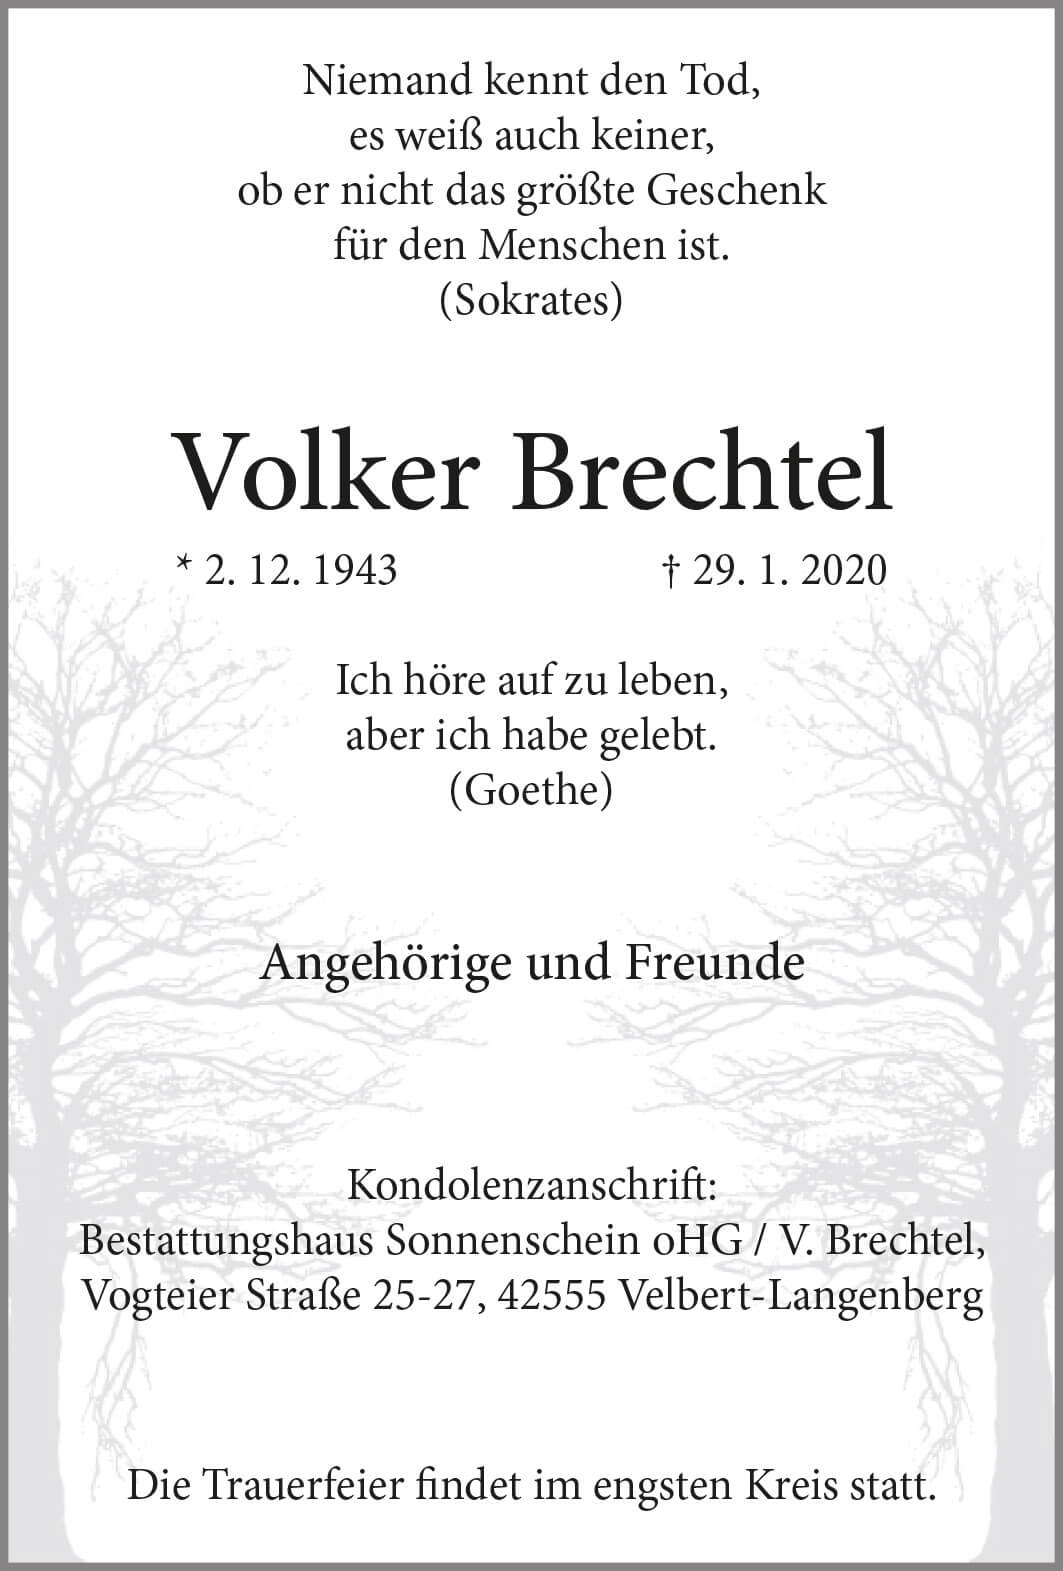 Volker Brechtel † 29. 1. 2020